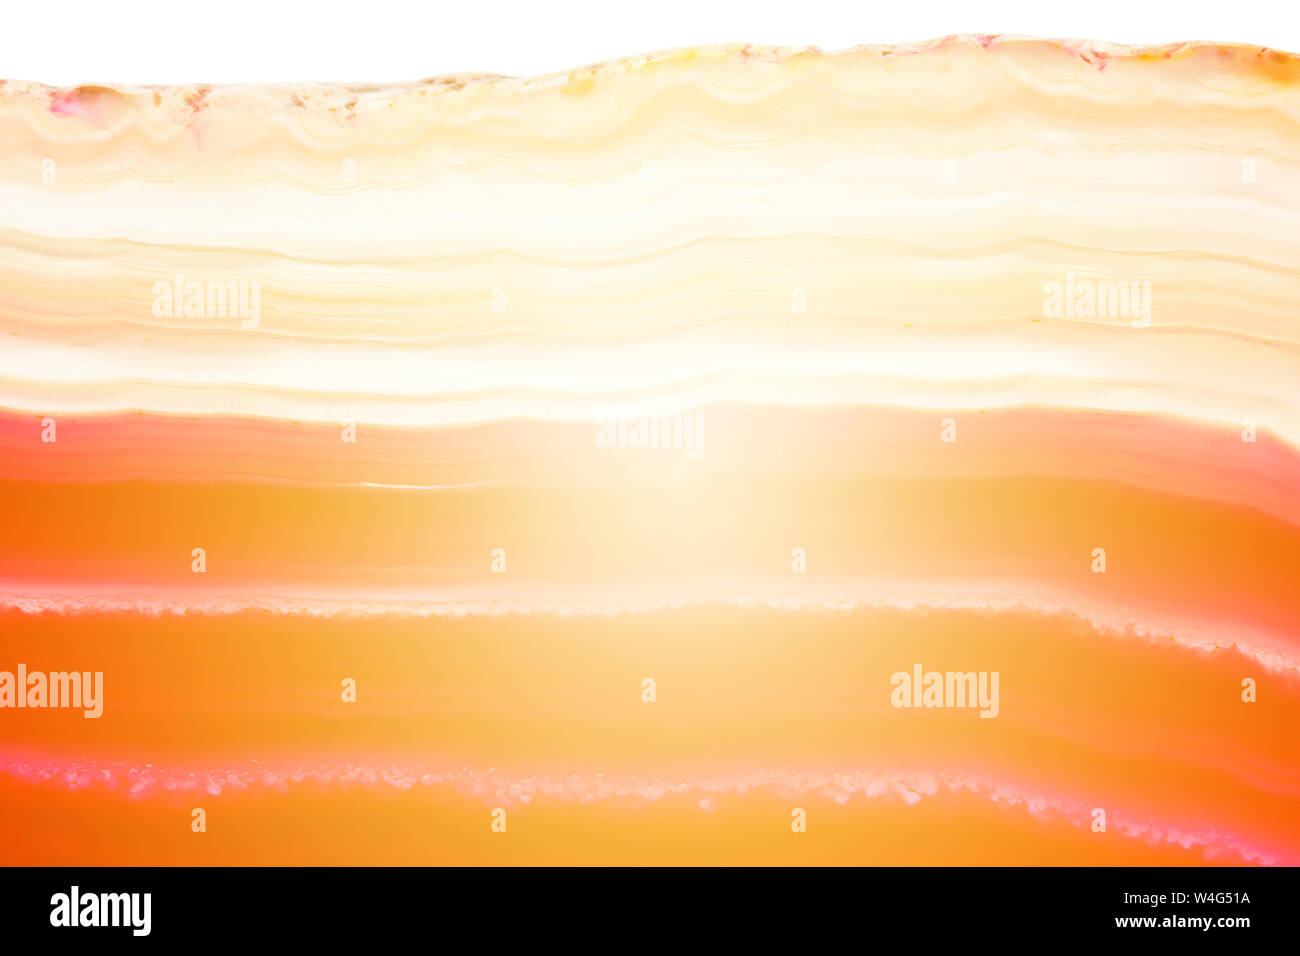 Zusammenfassung Hintergrund, rot und orange Achat mineral Querschnitt mit Sunbeam auf weißem Hintergrund gestreift Stockfoto